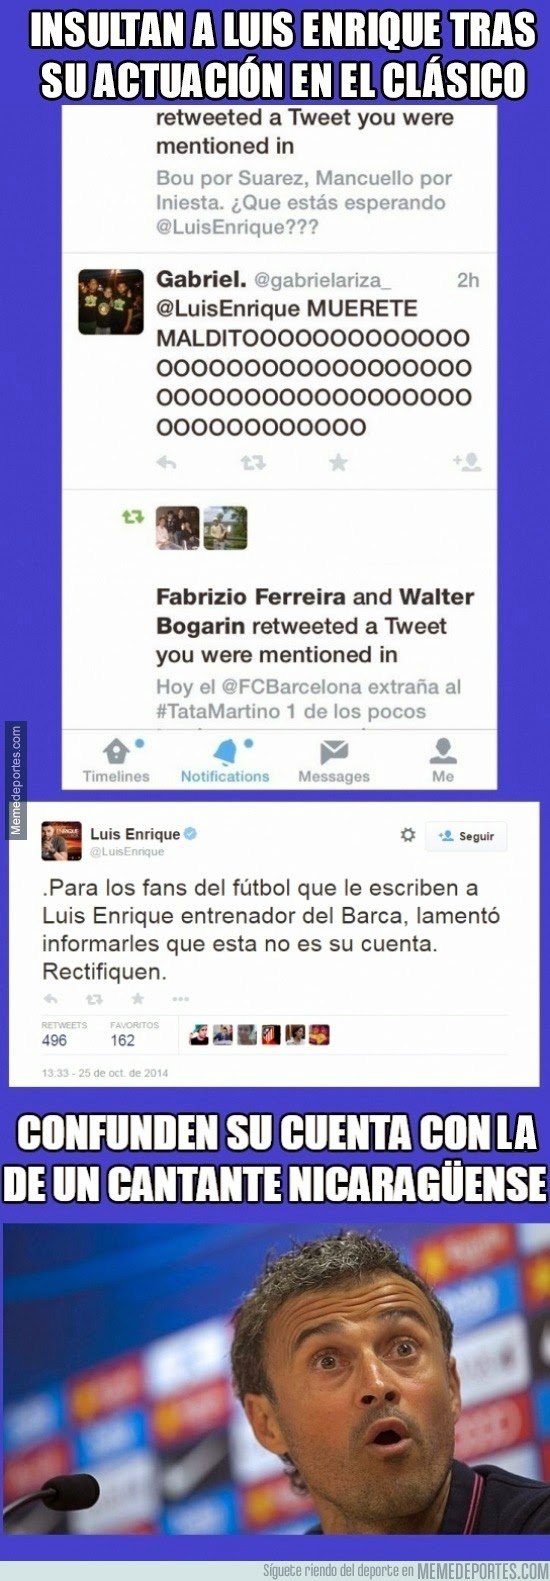 Luis Enrique Humor, cachondeo, bromas, chorradas, whatsapp, chistes, guasa y memes. Entrenador del Barcelona, ex Real Madrid... fútbol